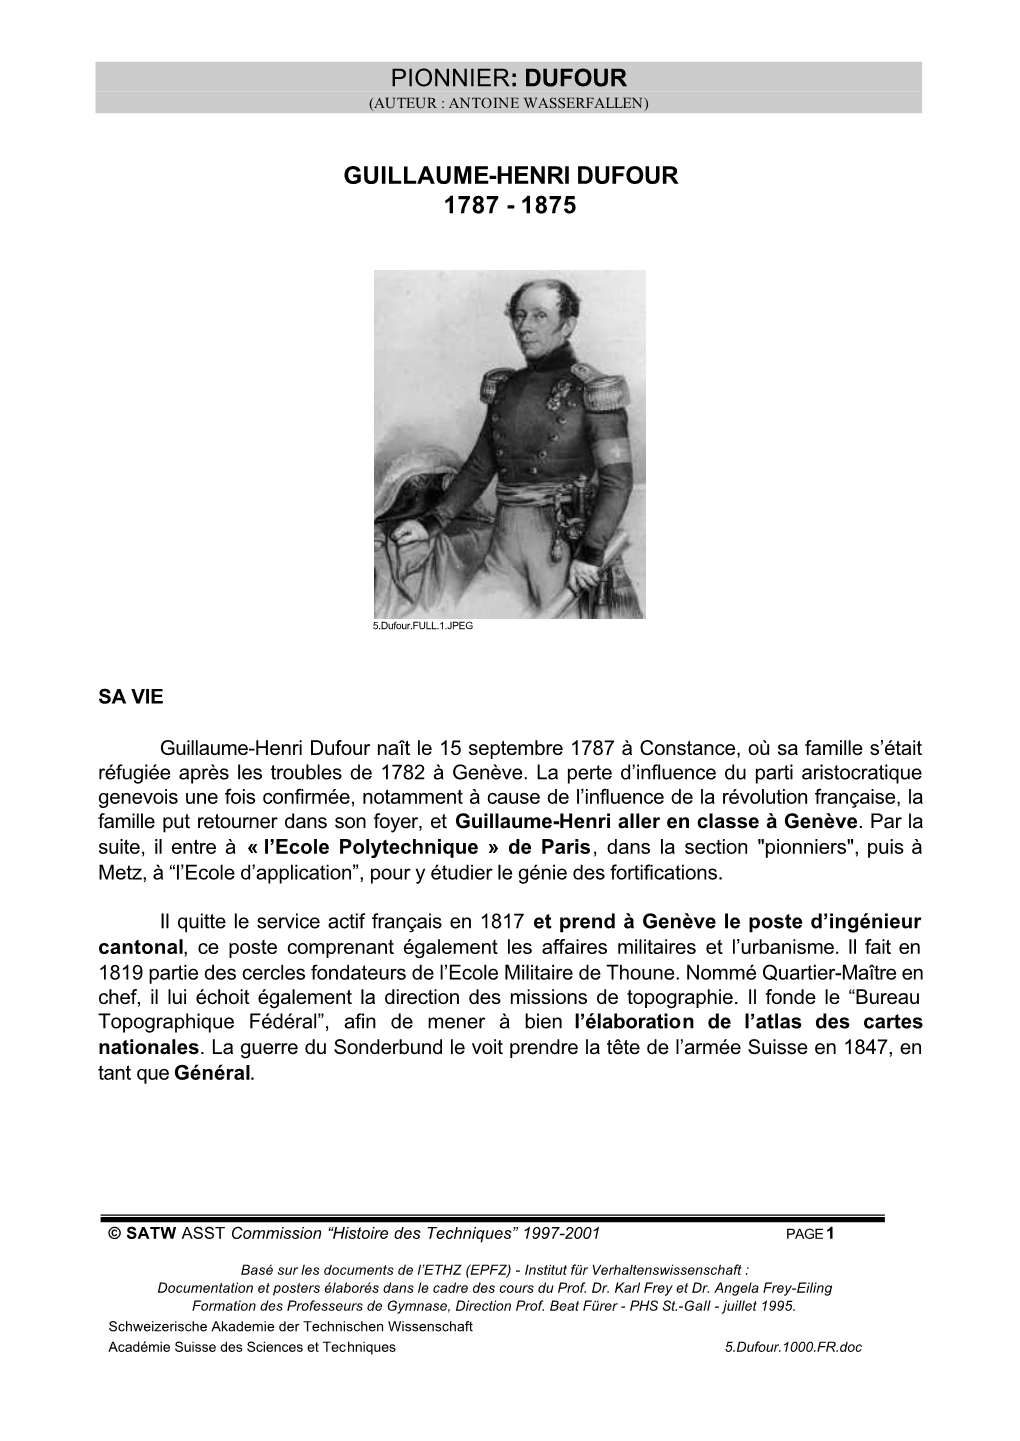 Pionnier: Dufour Guillaume-Henri Dufour 1787